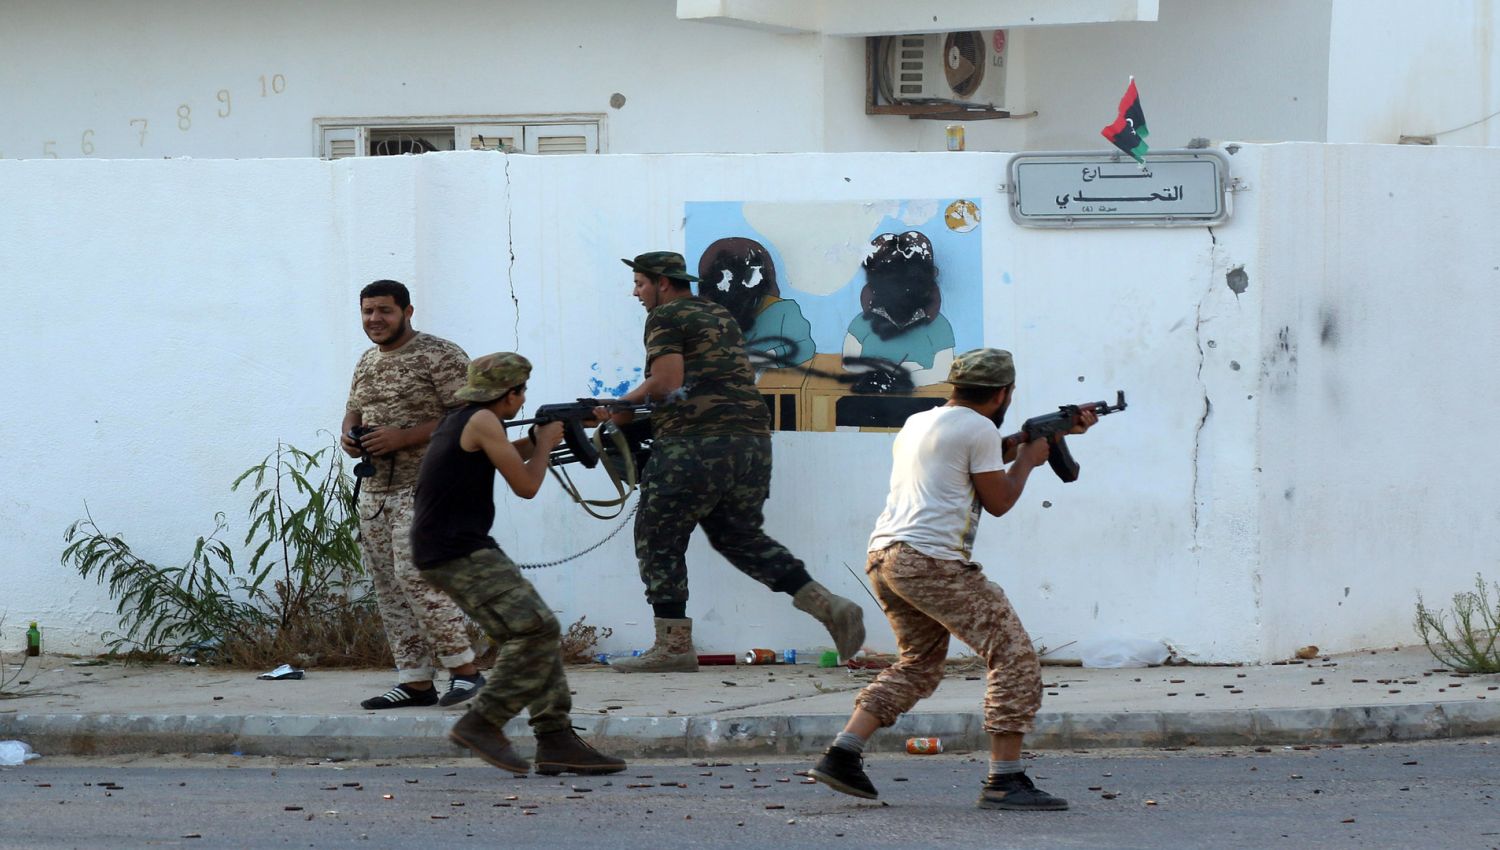 كيف دعمت قطر الجماعات المسلحة في سوريا وليبيا؟